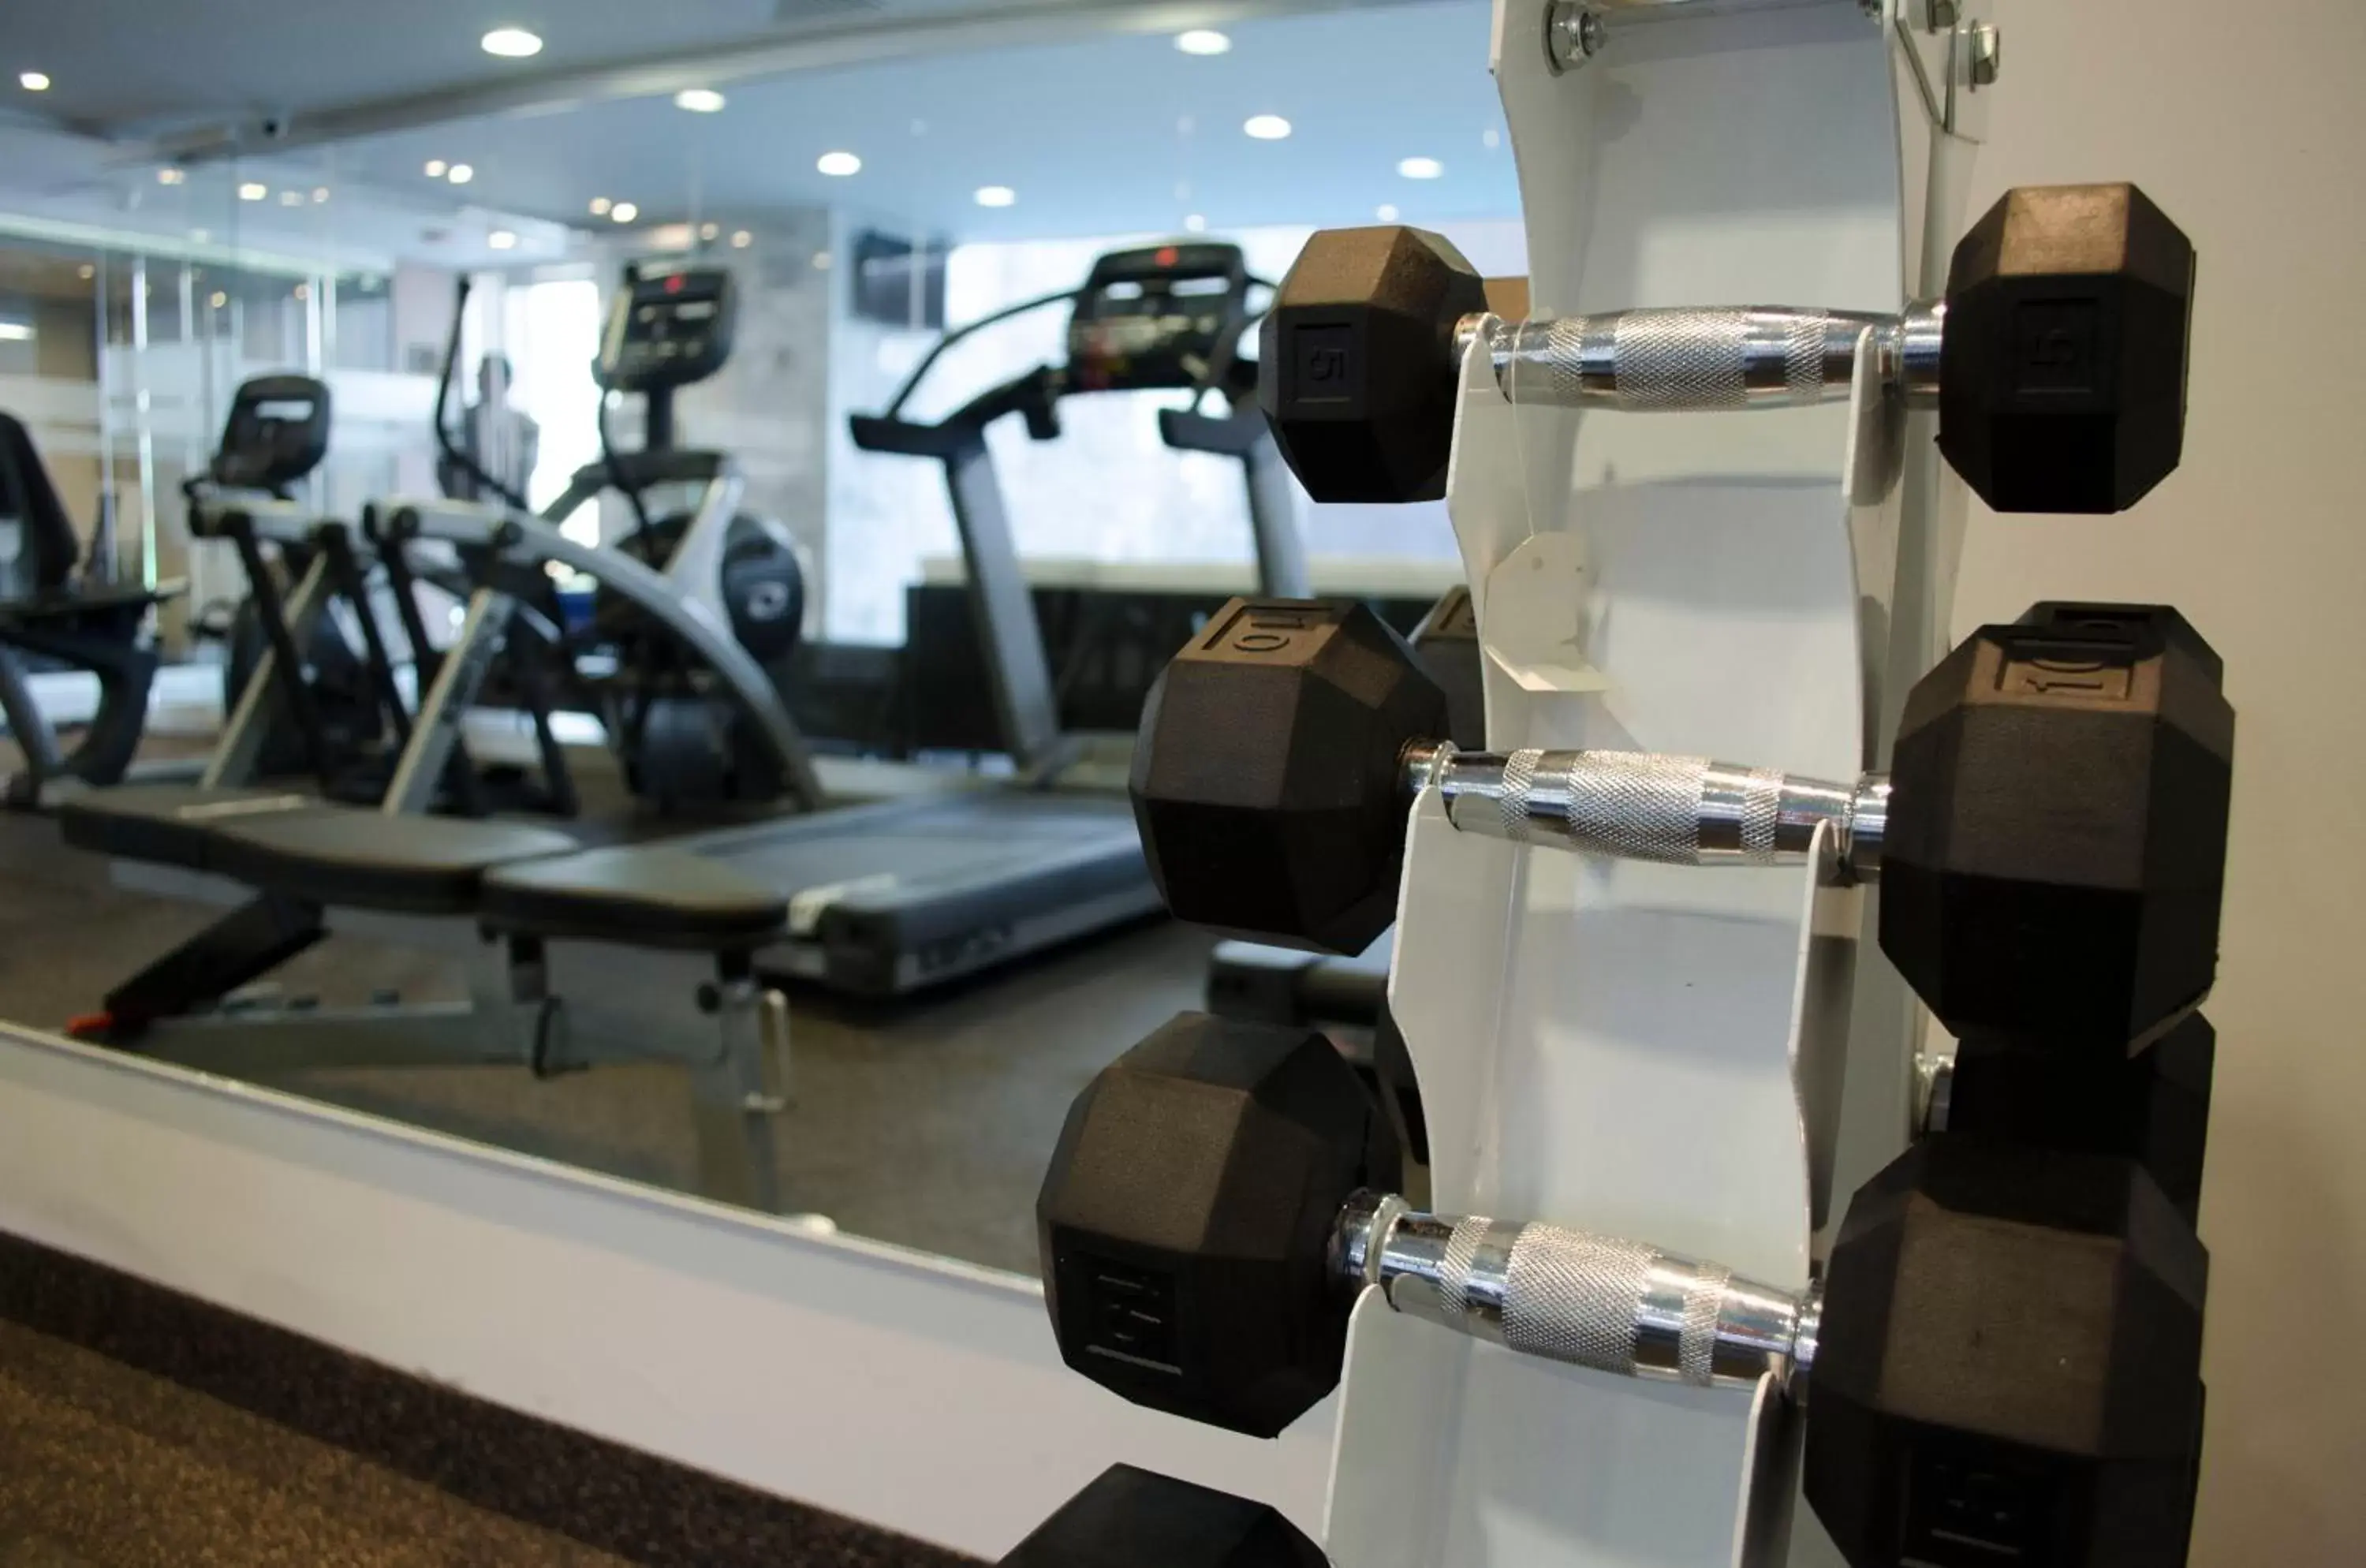 Fitness centre/facilities, Fitness Center/Facilities in Casa Inn Galerias Celaya